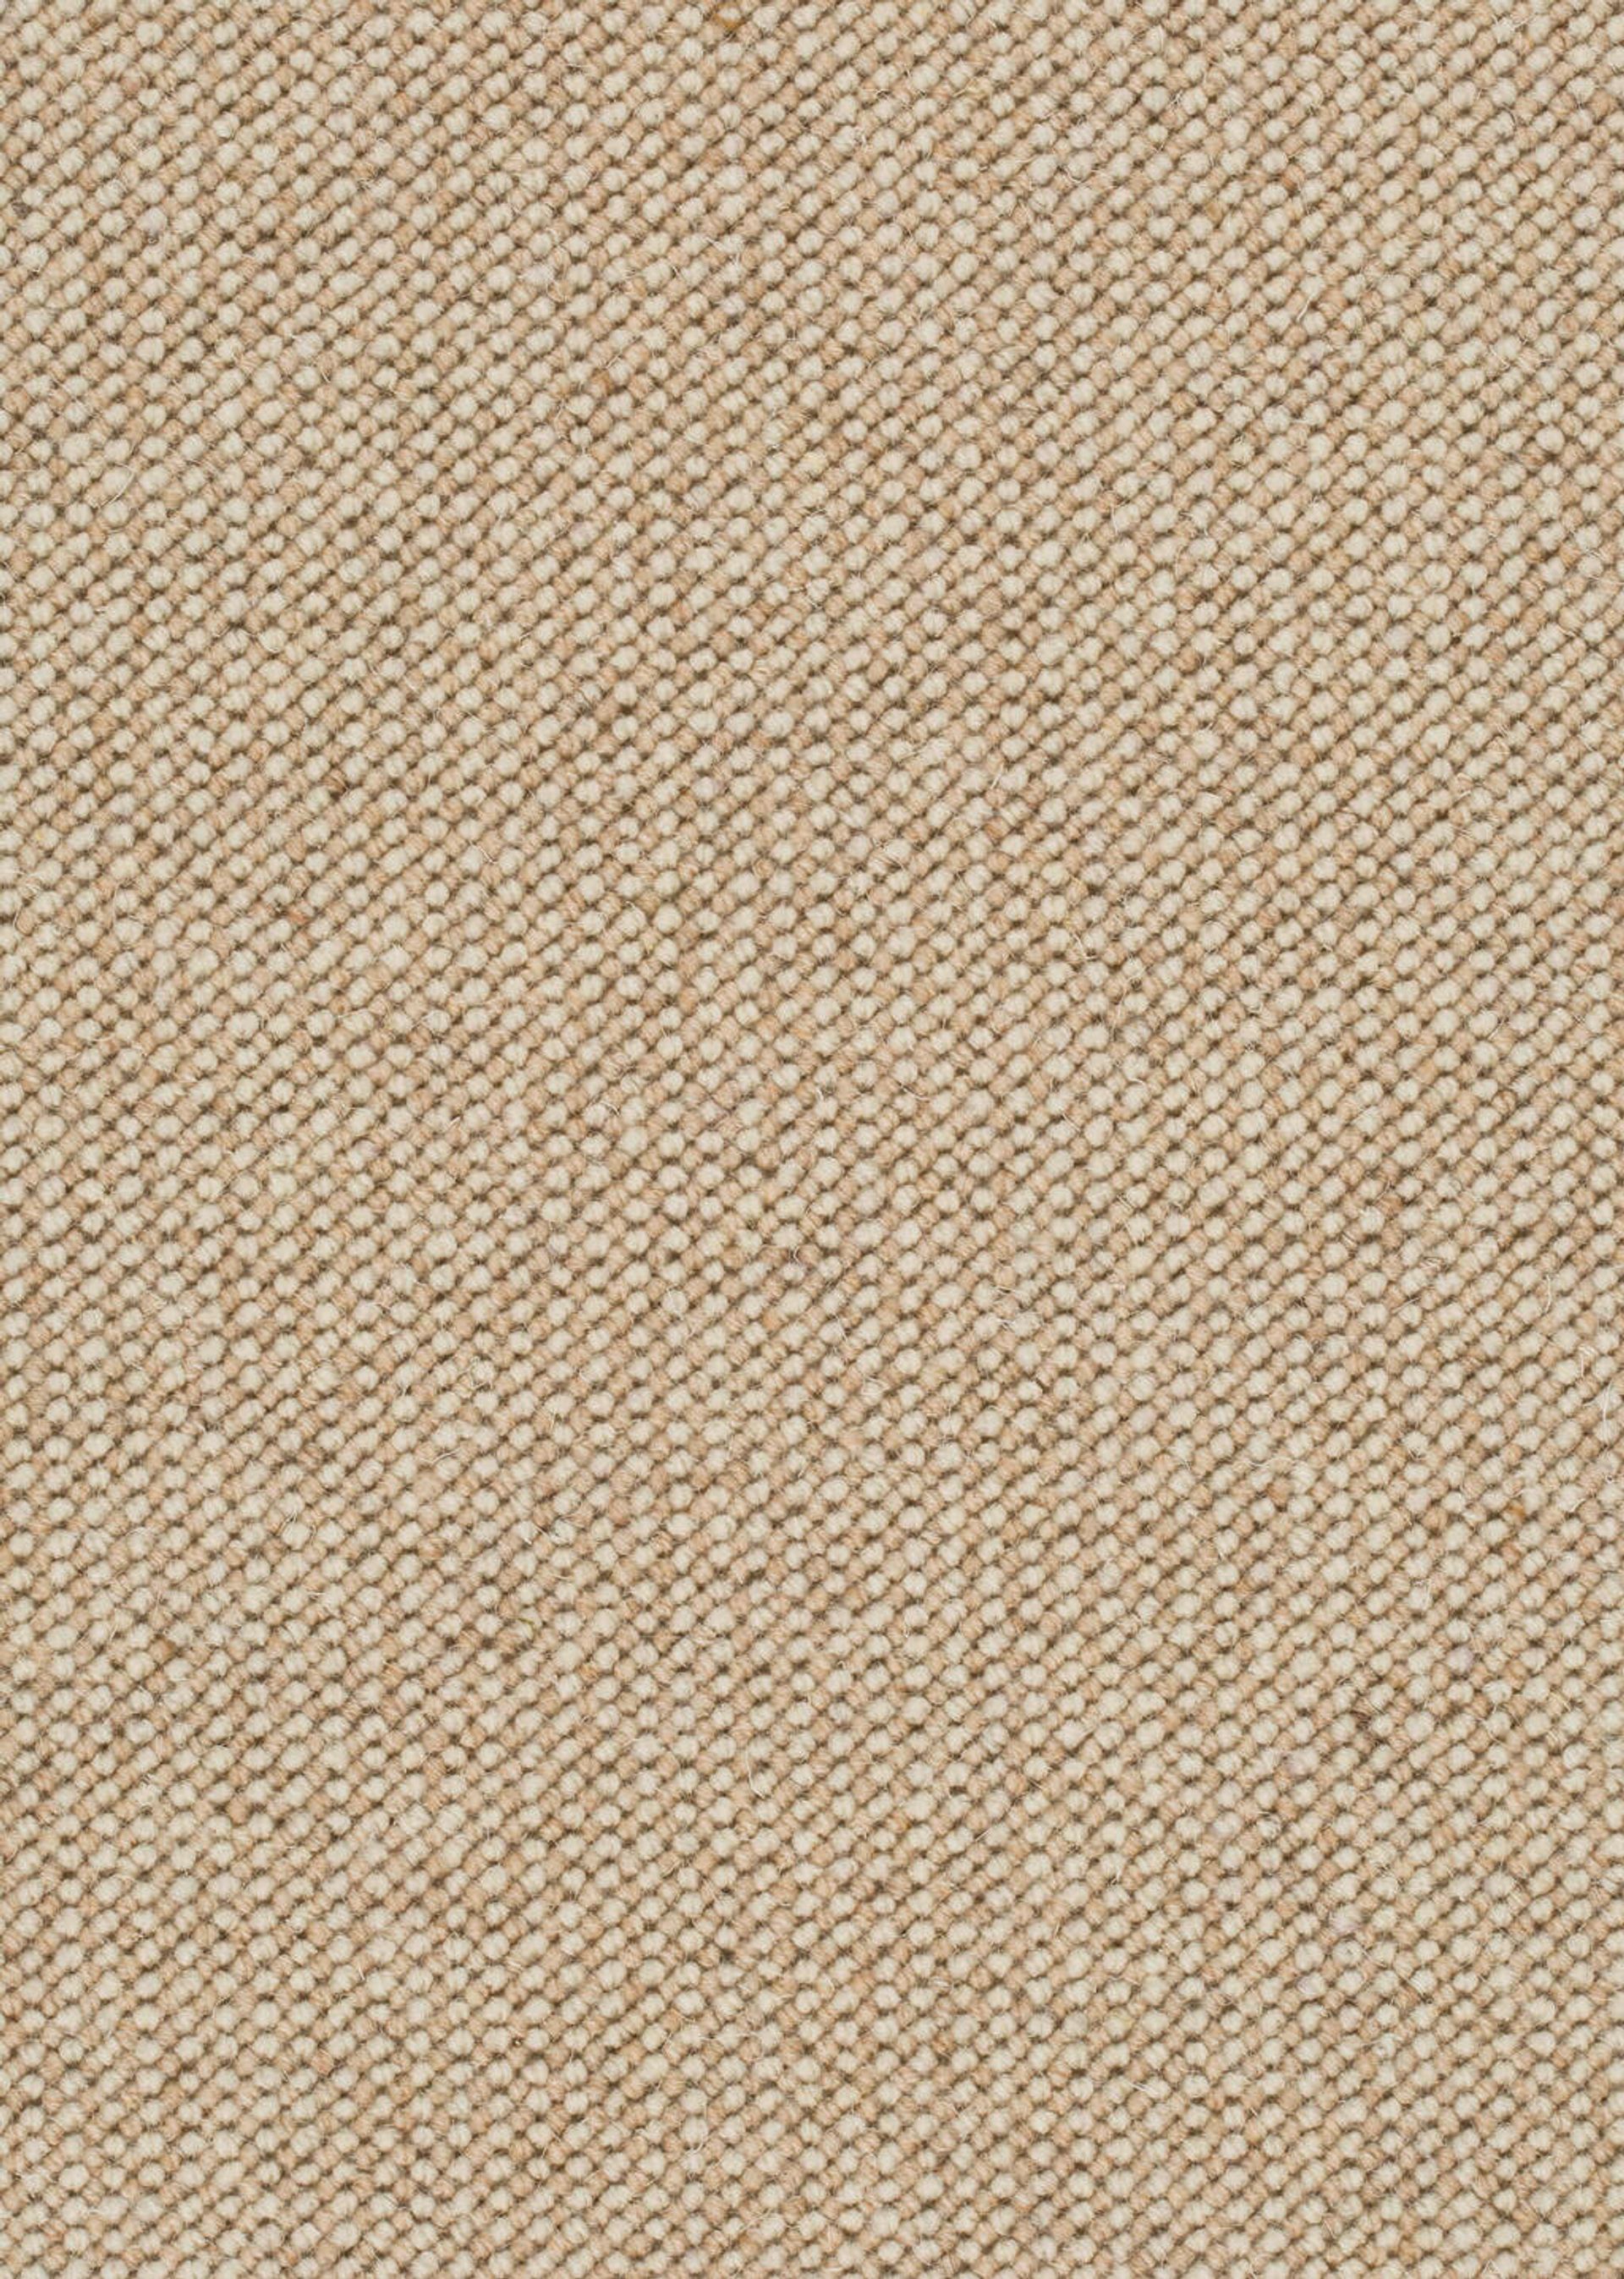 Teppichboden Schurwolle Ohio Farbe 212 Rollenbreite: 500 cm